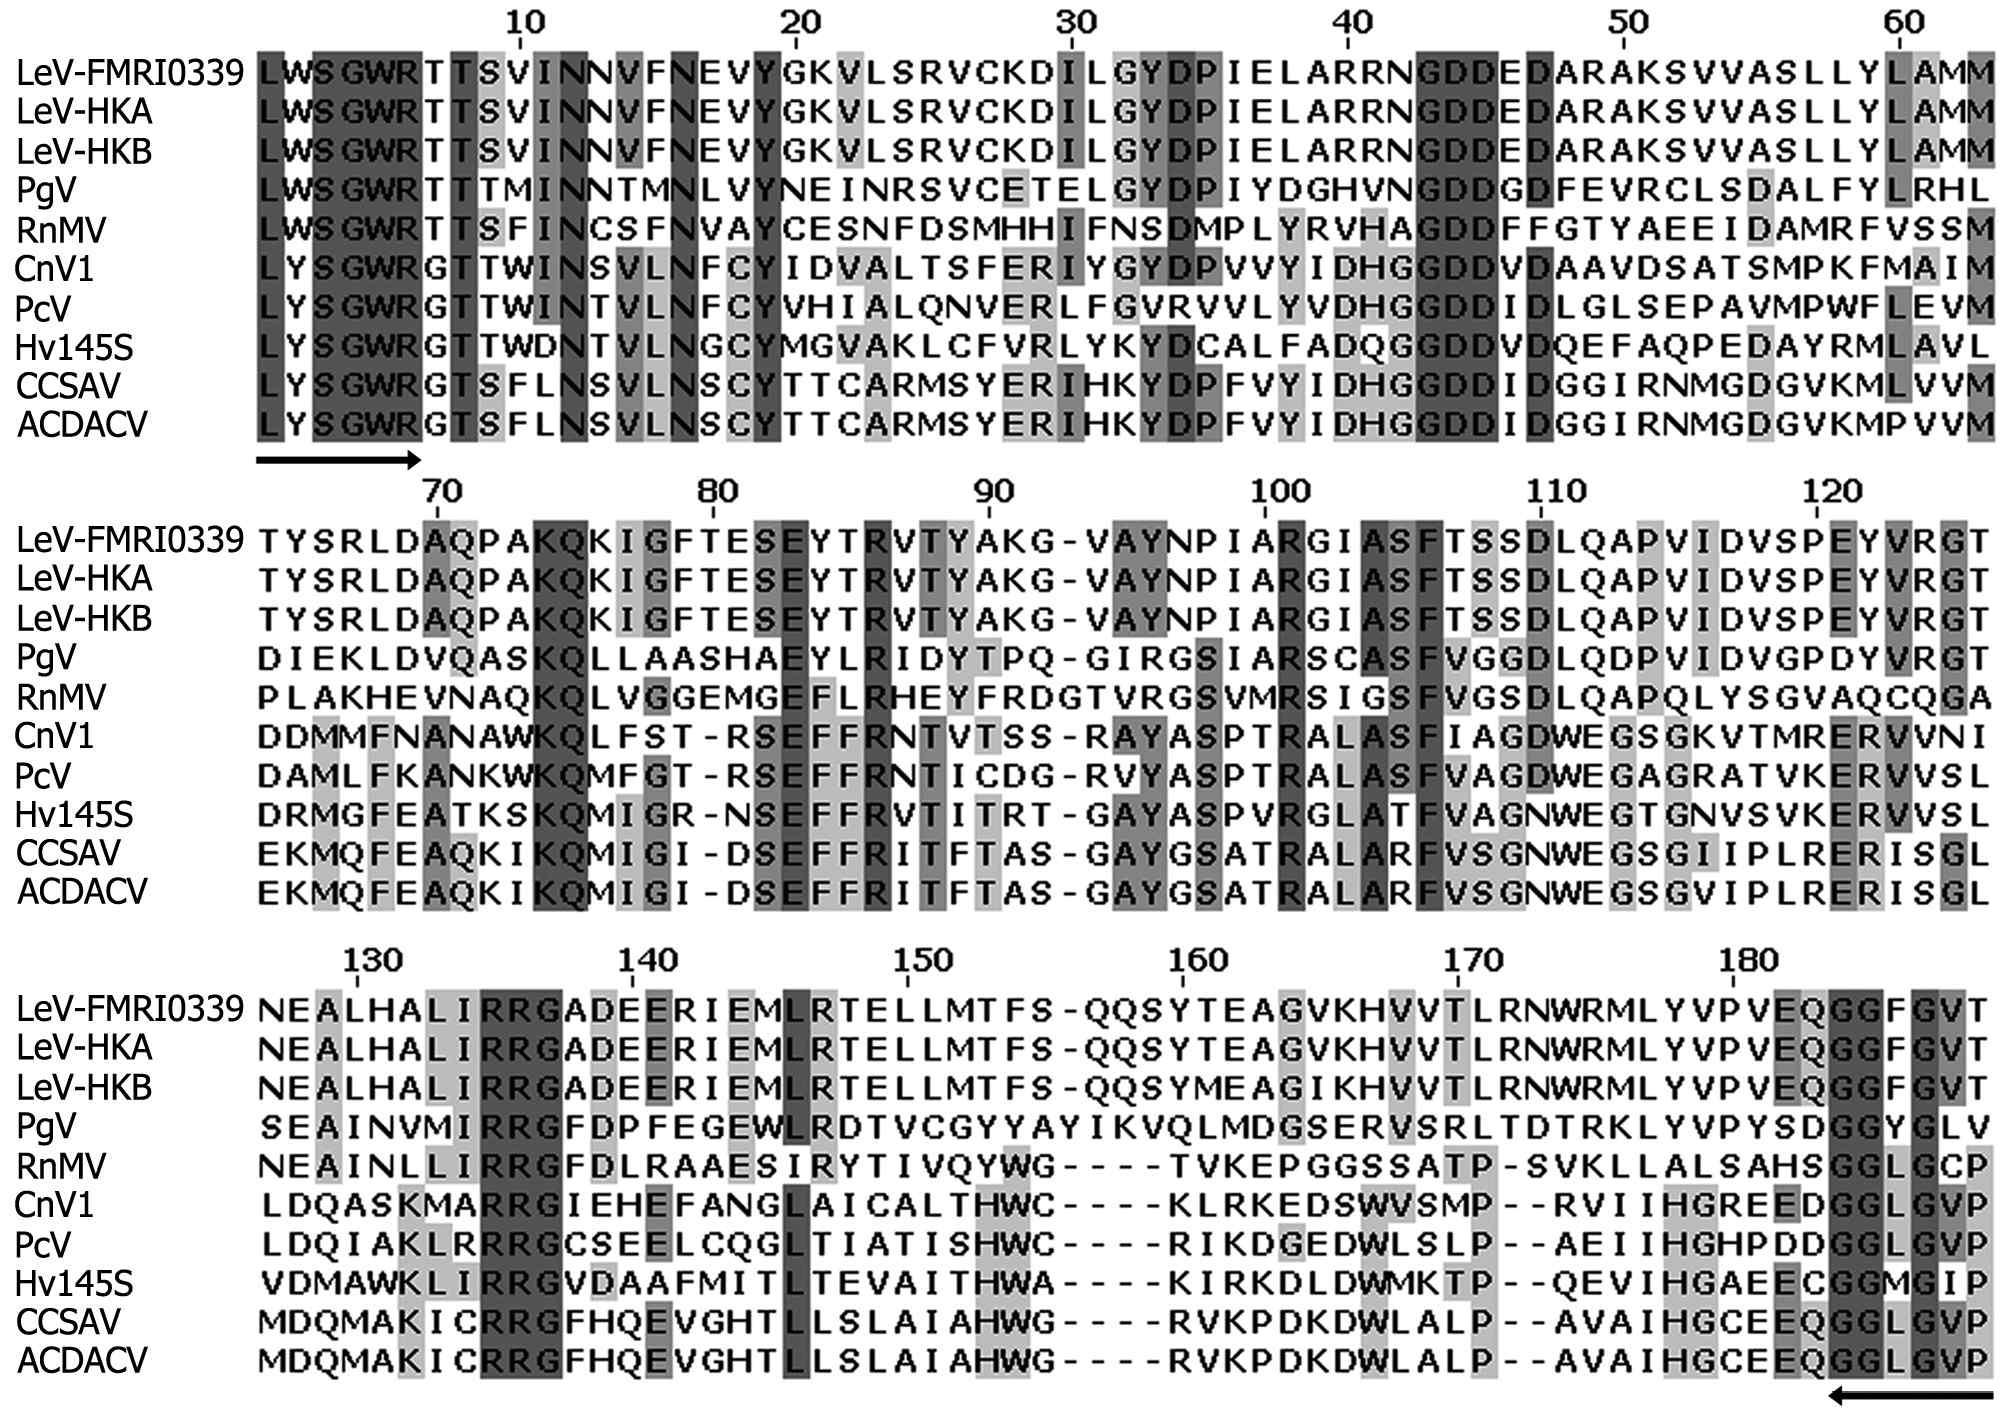 산조701의 버섯바이러스 LeV-FMRI0339의 부분 RNA-dependant RNA polymerase (RDRP) proteins과 다양한 곰팡이 바이러스들과의 alignment 분석